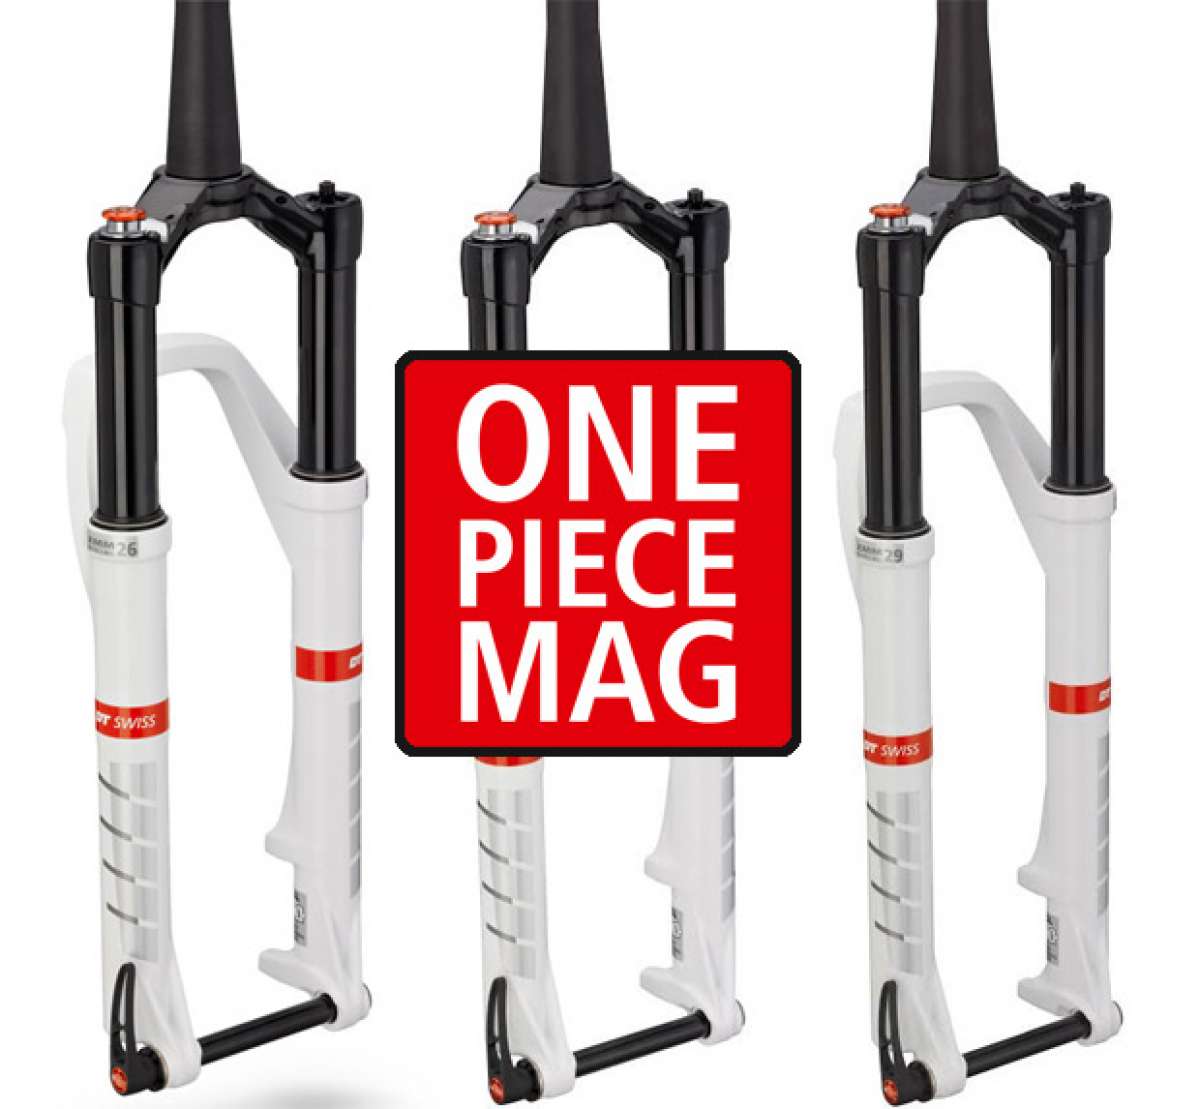 Nuevas horquillas DT Swiss One Piece Mag, la mejor relación peso-precio del mercado